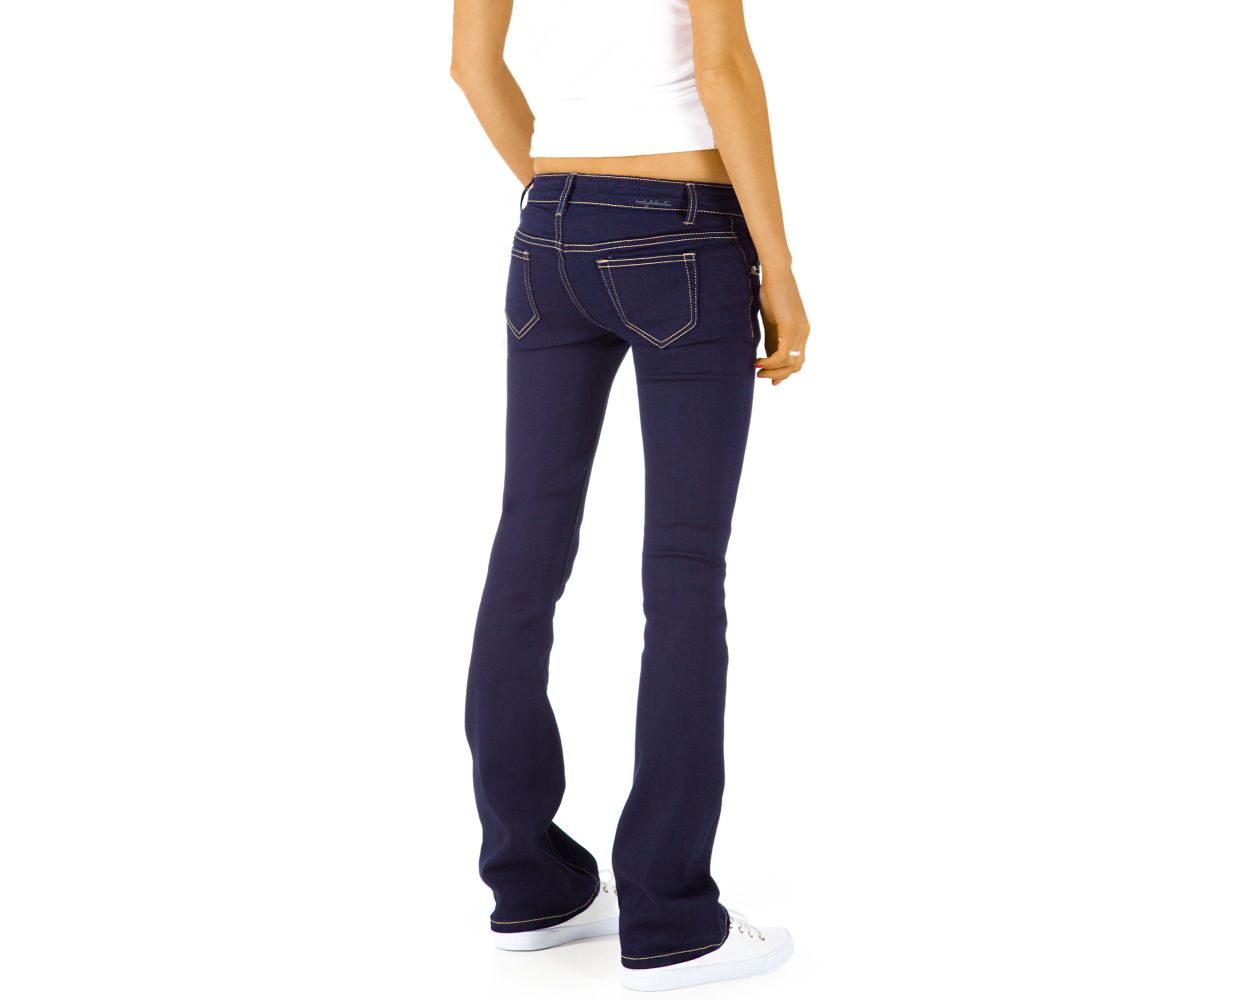 Be Styled Damen Bootcut Jeans Basic Schlaghose Mit Huftigem Bund J43kw